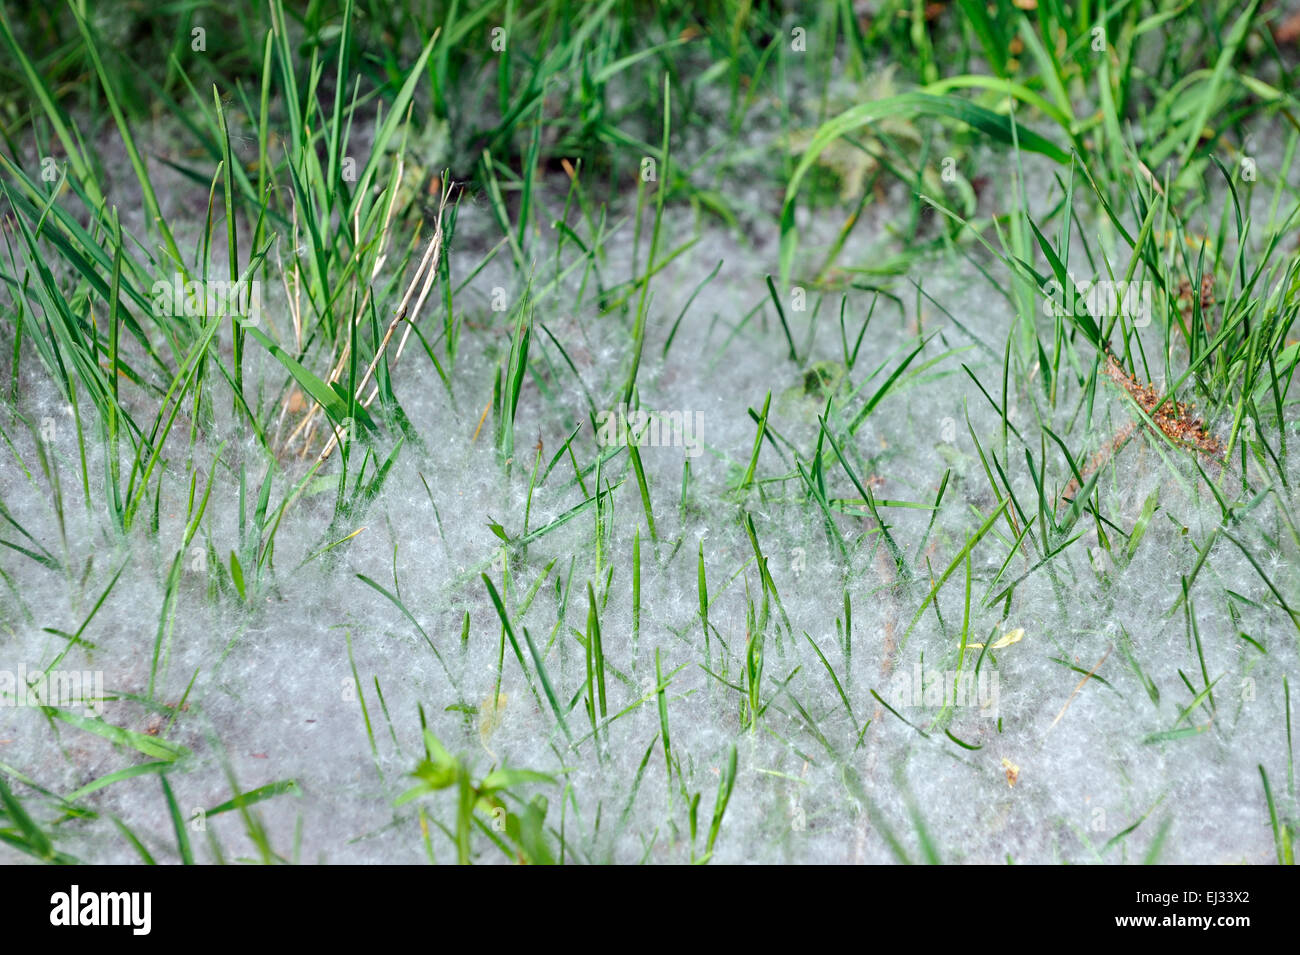 Dans l'herbe couverte de peluches de semences les saules (Salix sp.), les chatons des arbres dispersés par le vent causant la fièvre de foin / pollinose Banque D'Images